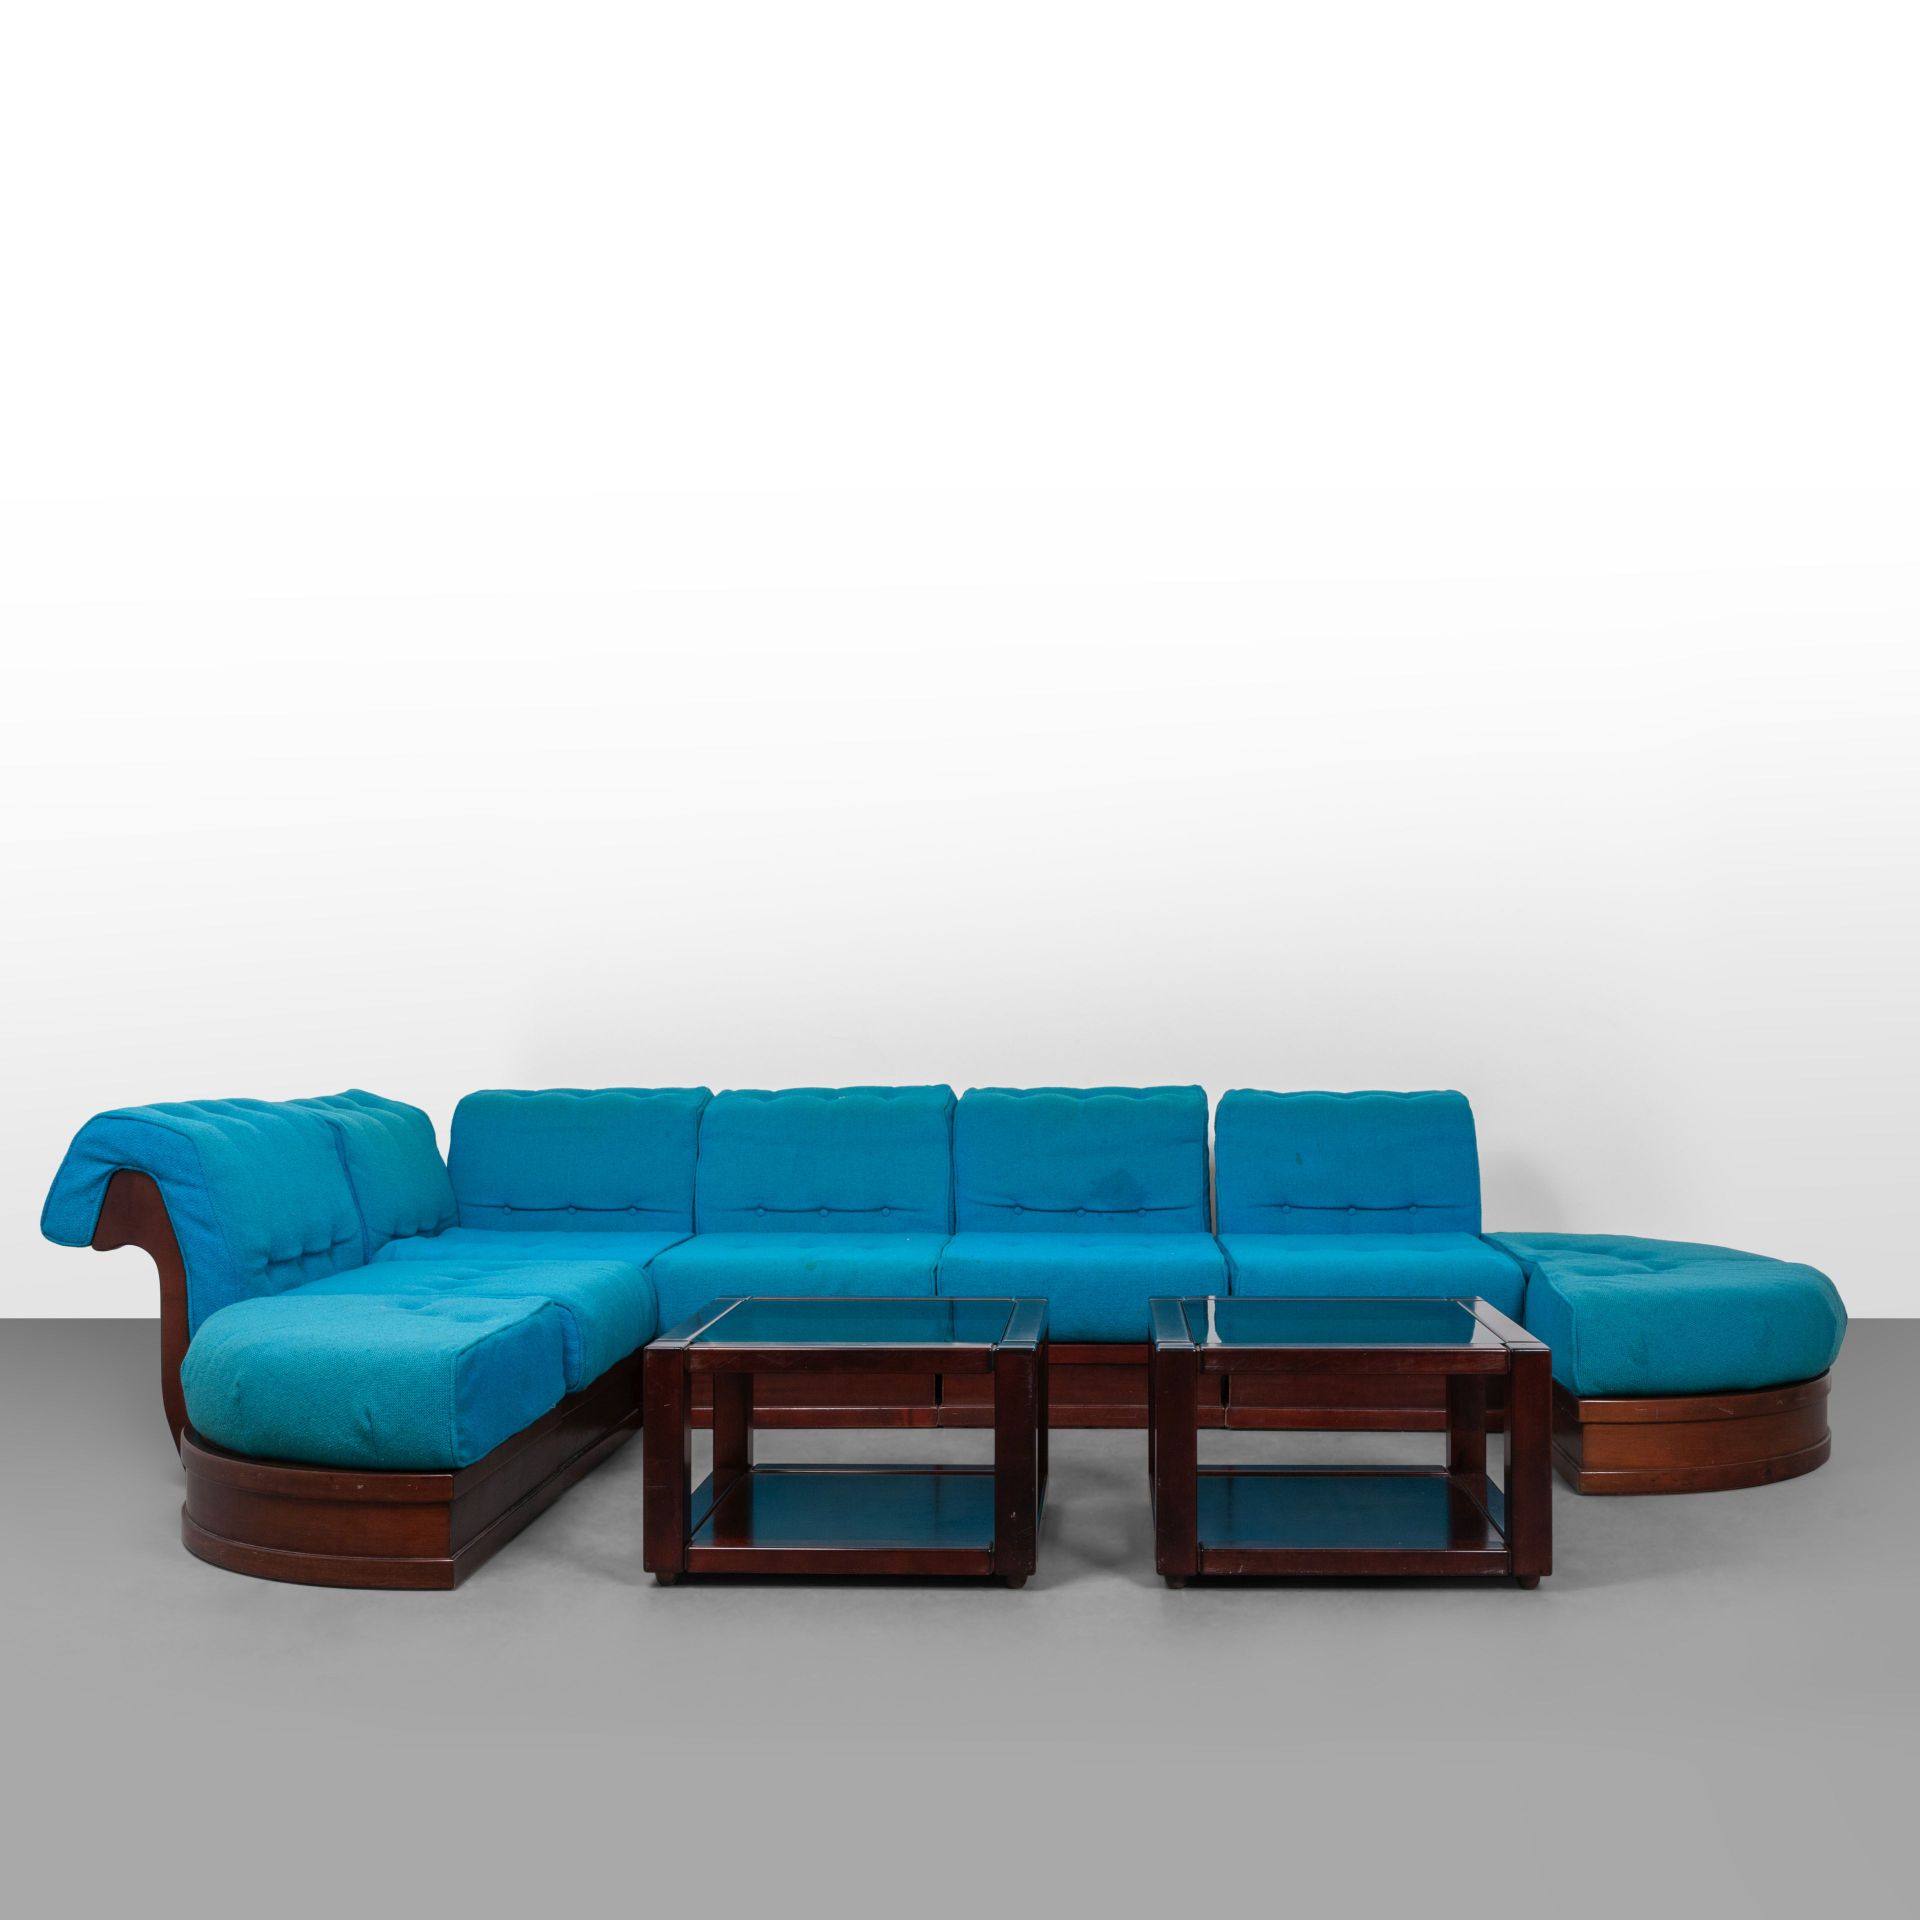 FRIGERIO LUCIANO FRIGERIO FRIGERIO DI DESIO anni '70.
Un divano componibile 'Can&hellip;